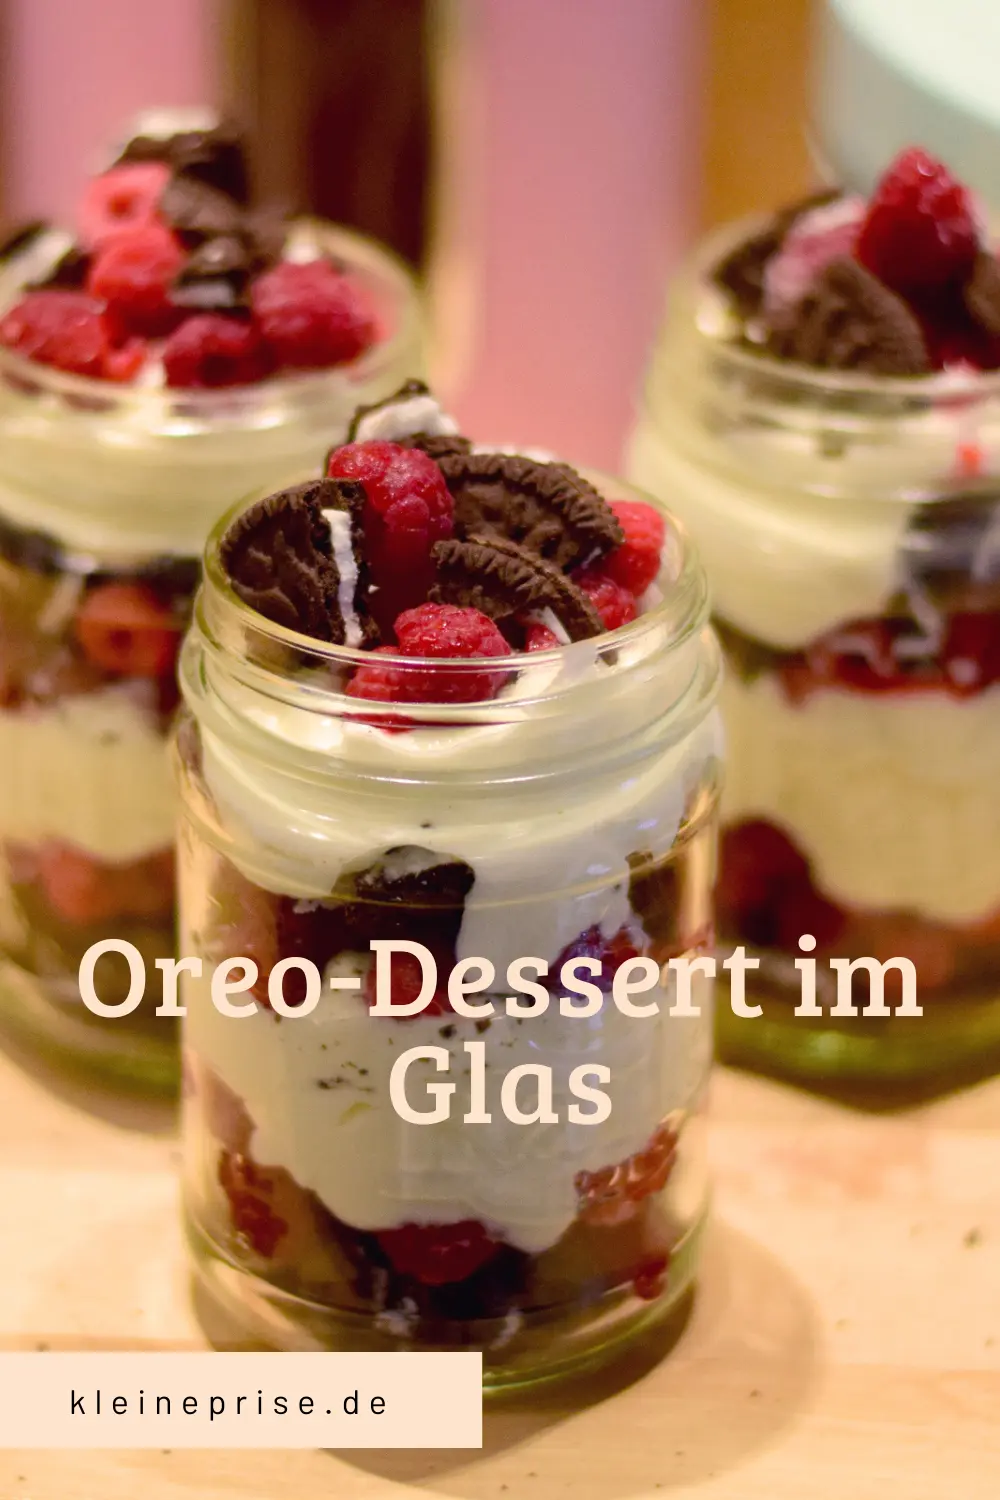 Pin es bei Pinterest: Oreo-Dessert im Glas